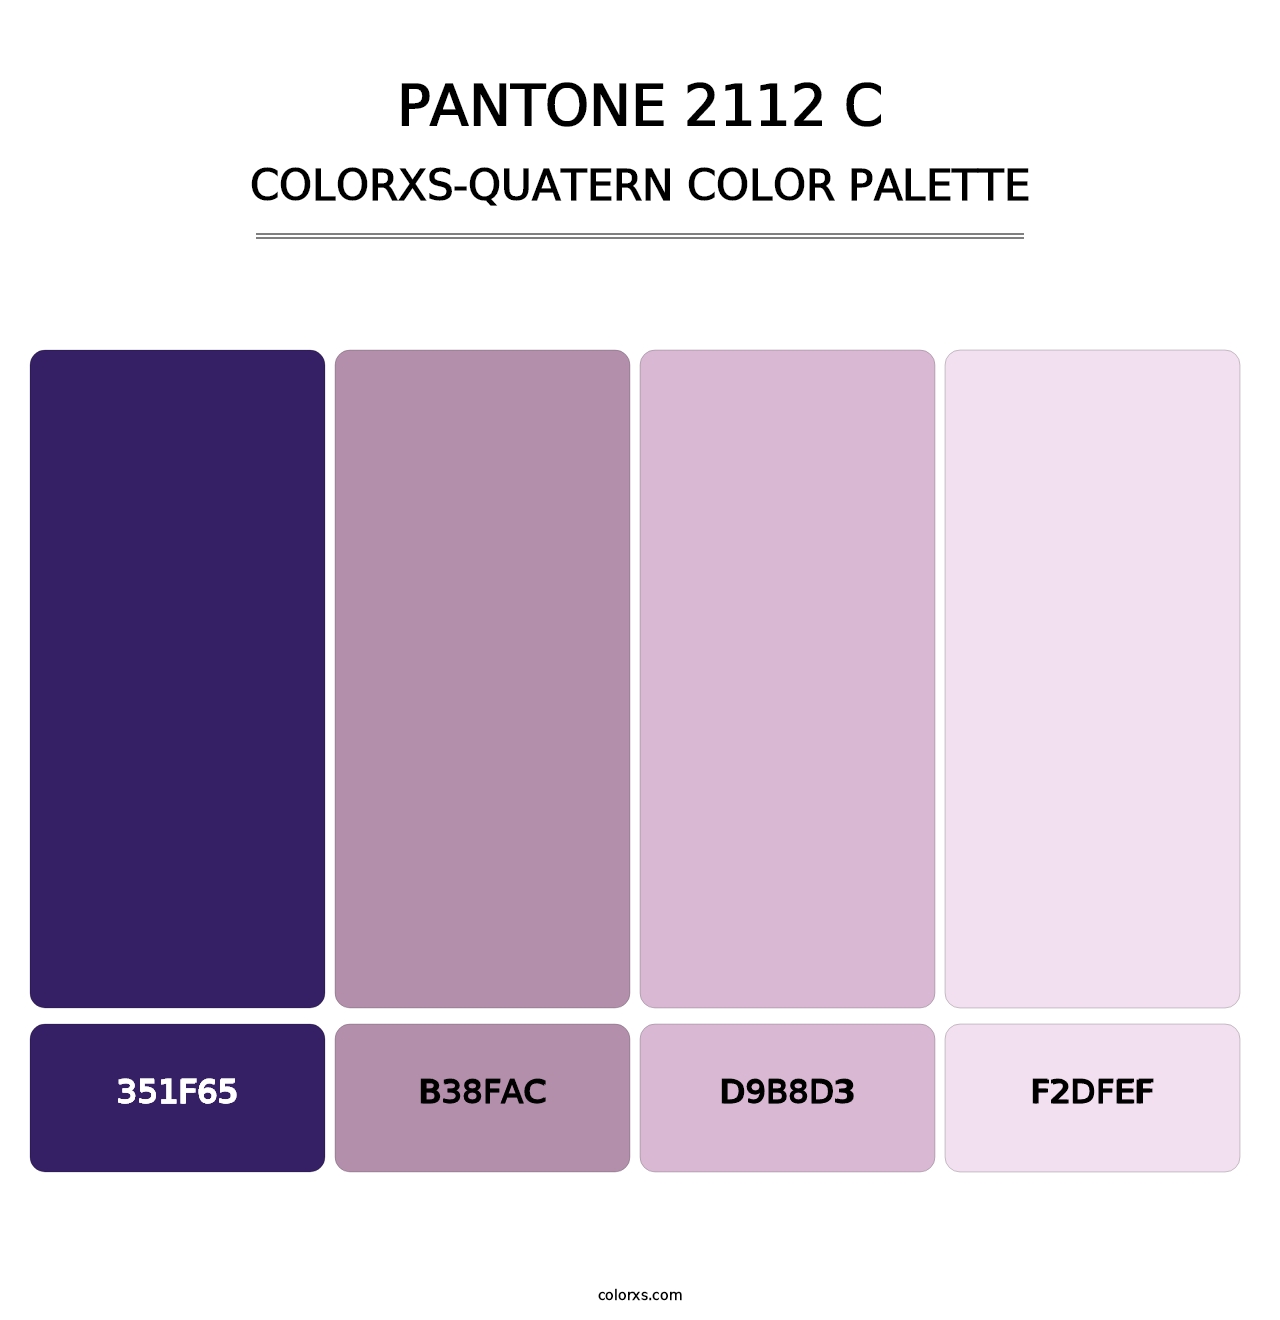 PANTONE 2112 C - Colorxs Quatern Palette